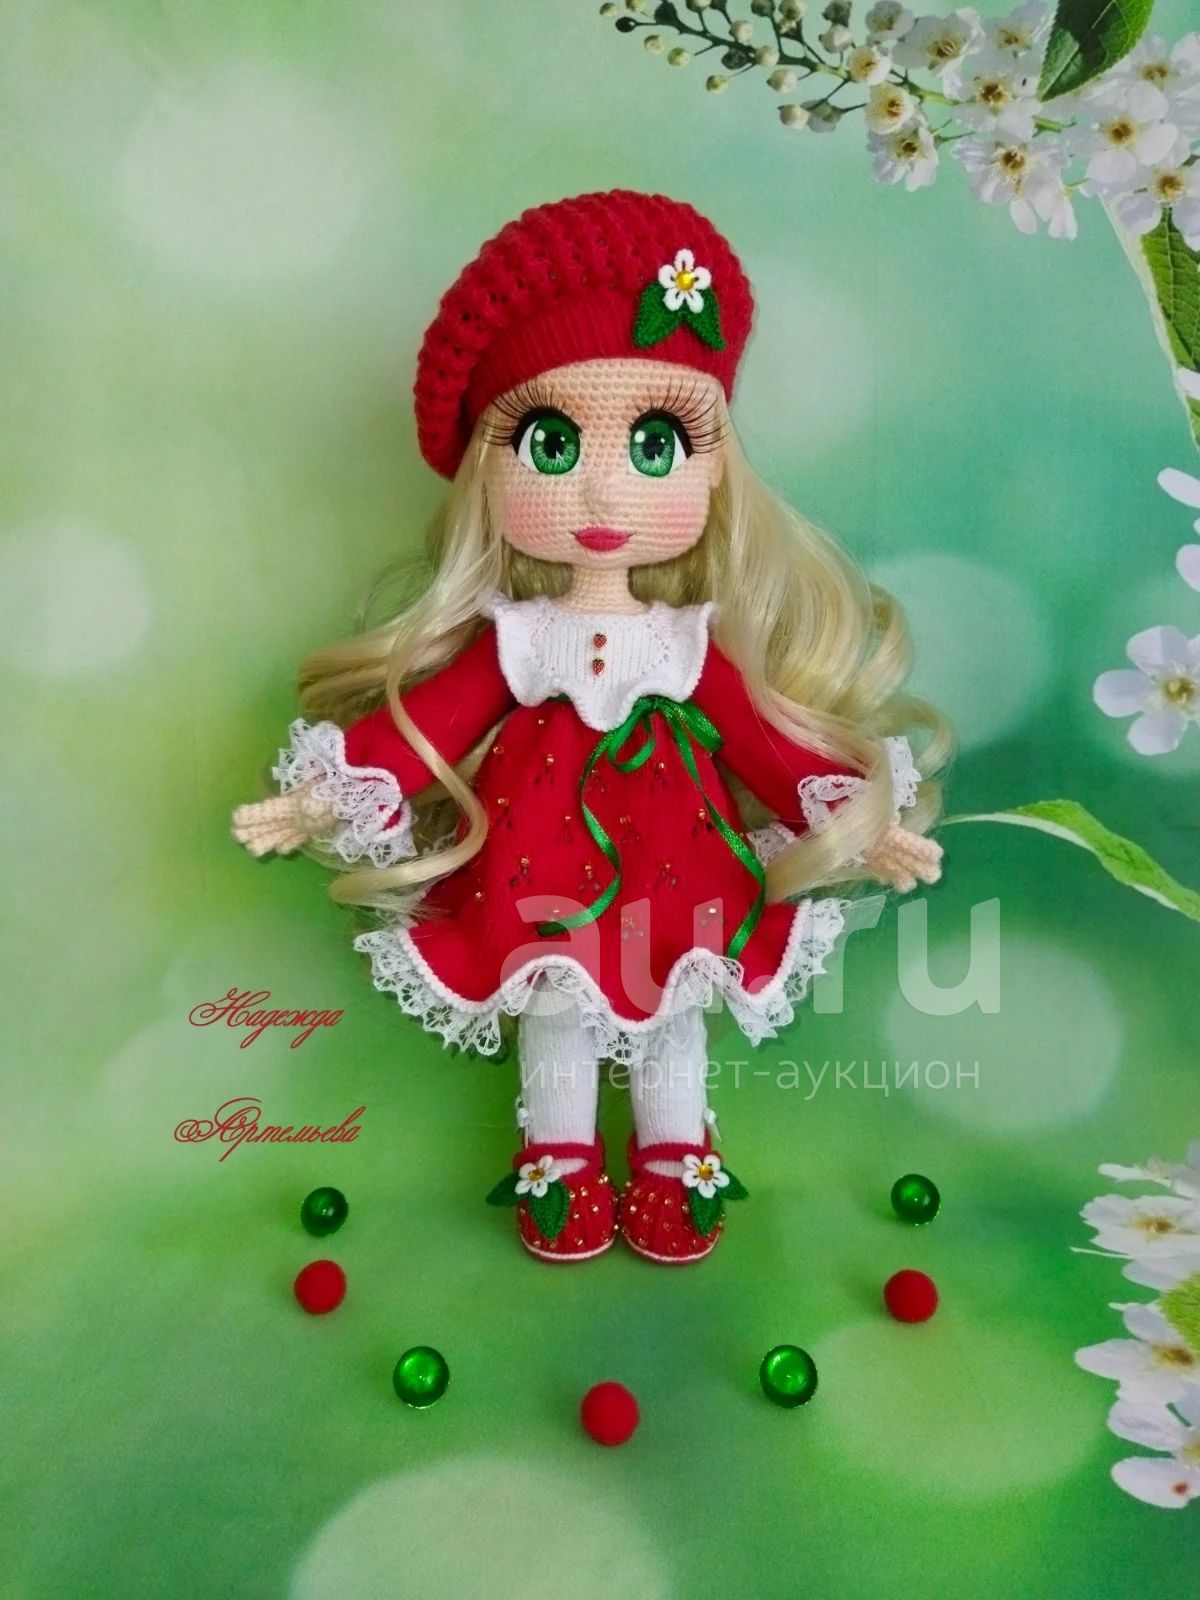 Вязаная игрушка - Куколка, Кукла Ягодка!!! — купить в Красноярске.  Авторские куклы, игрушки, поделки на интернет-аукционе Au.ru